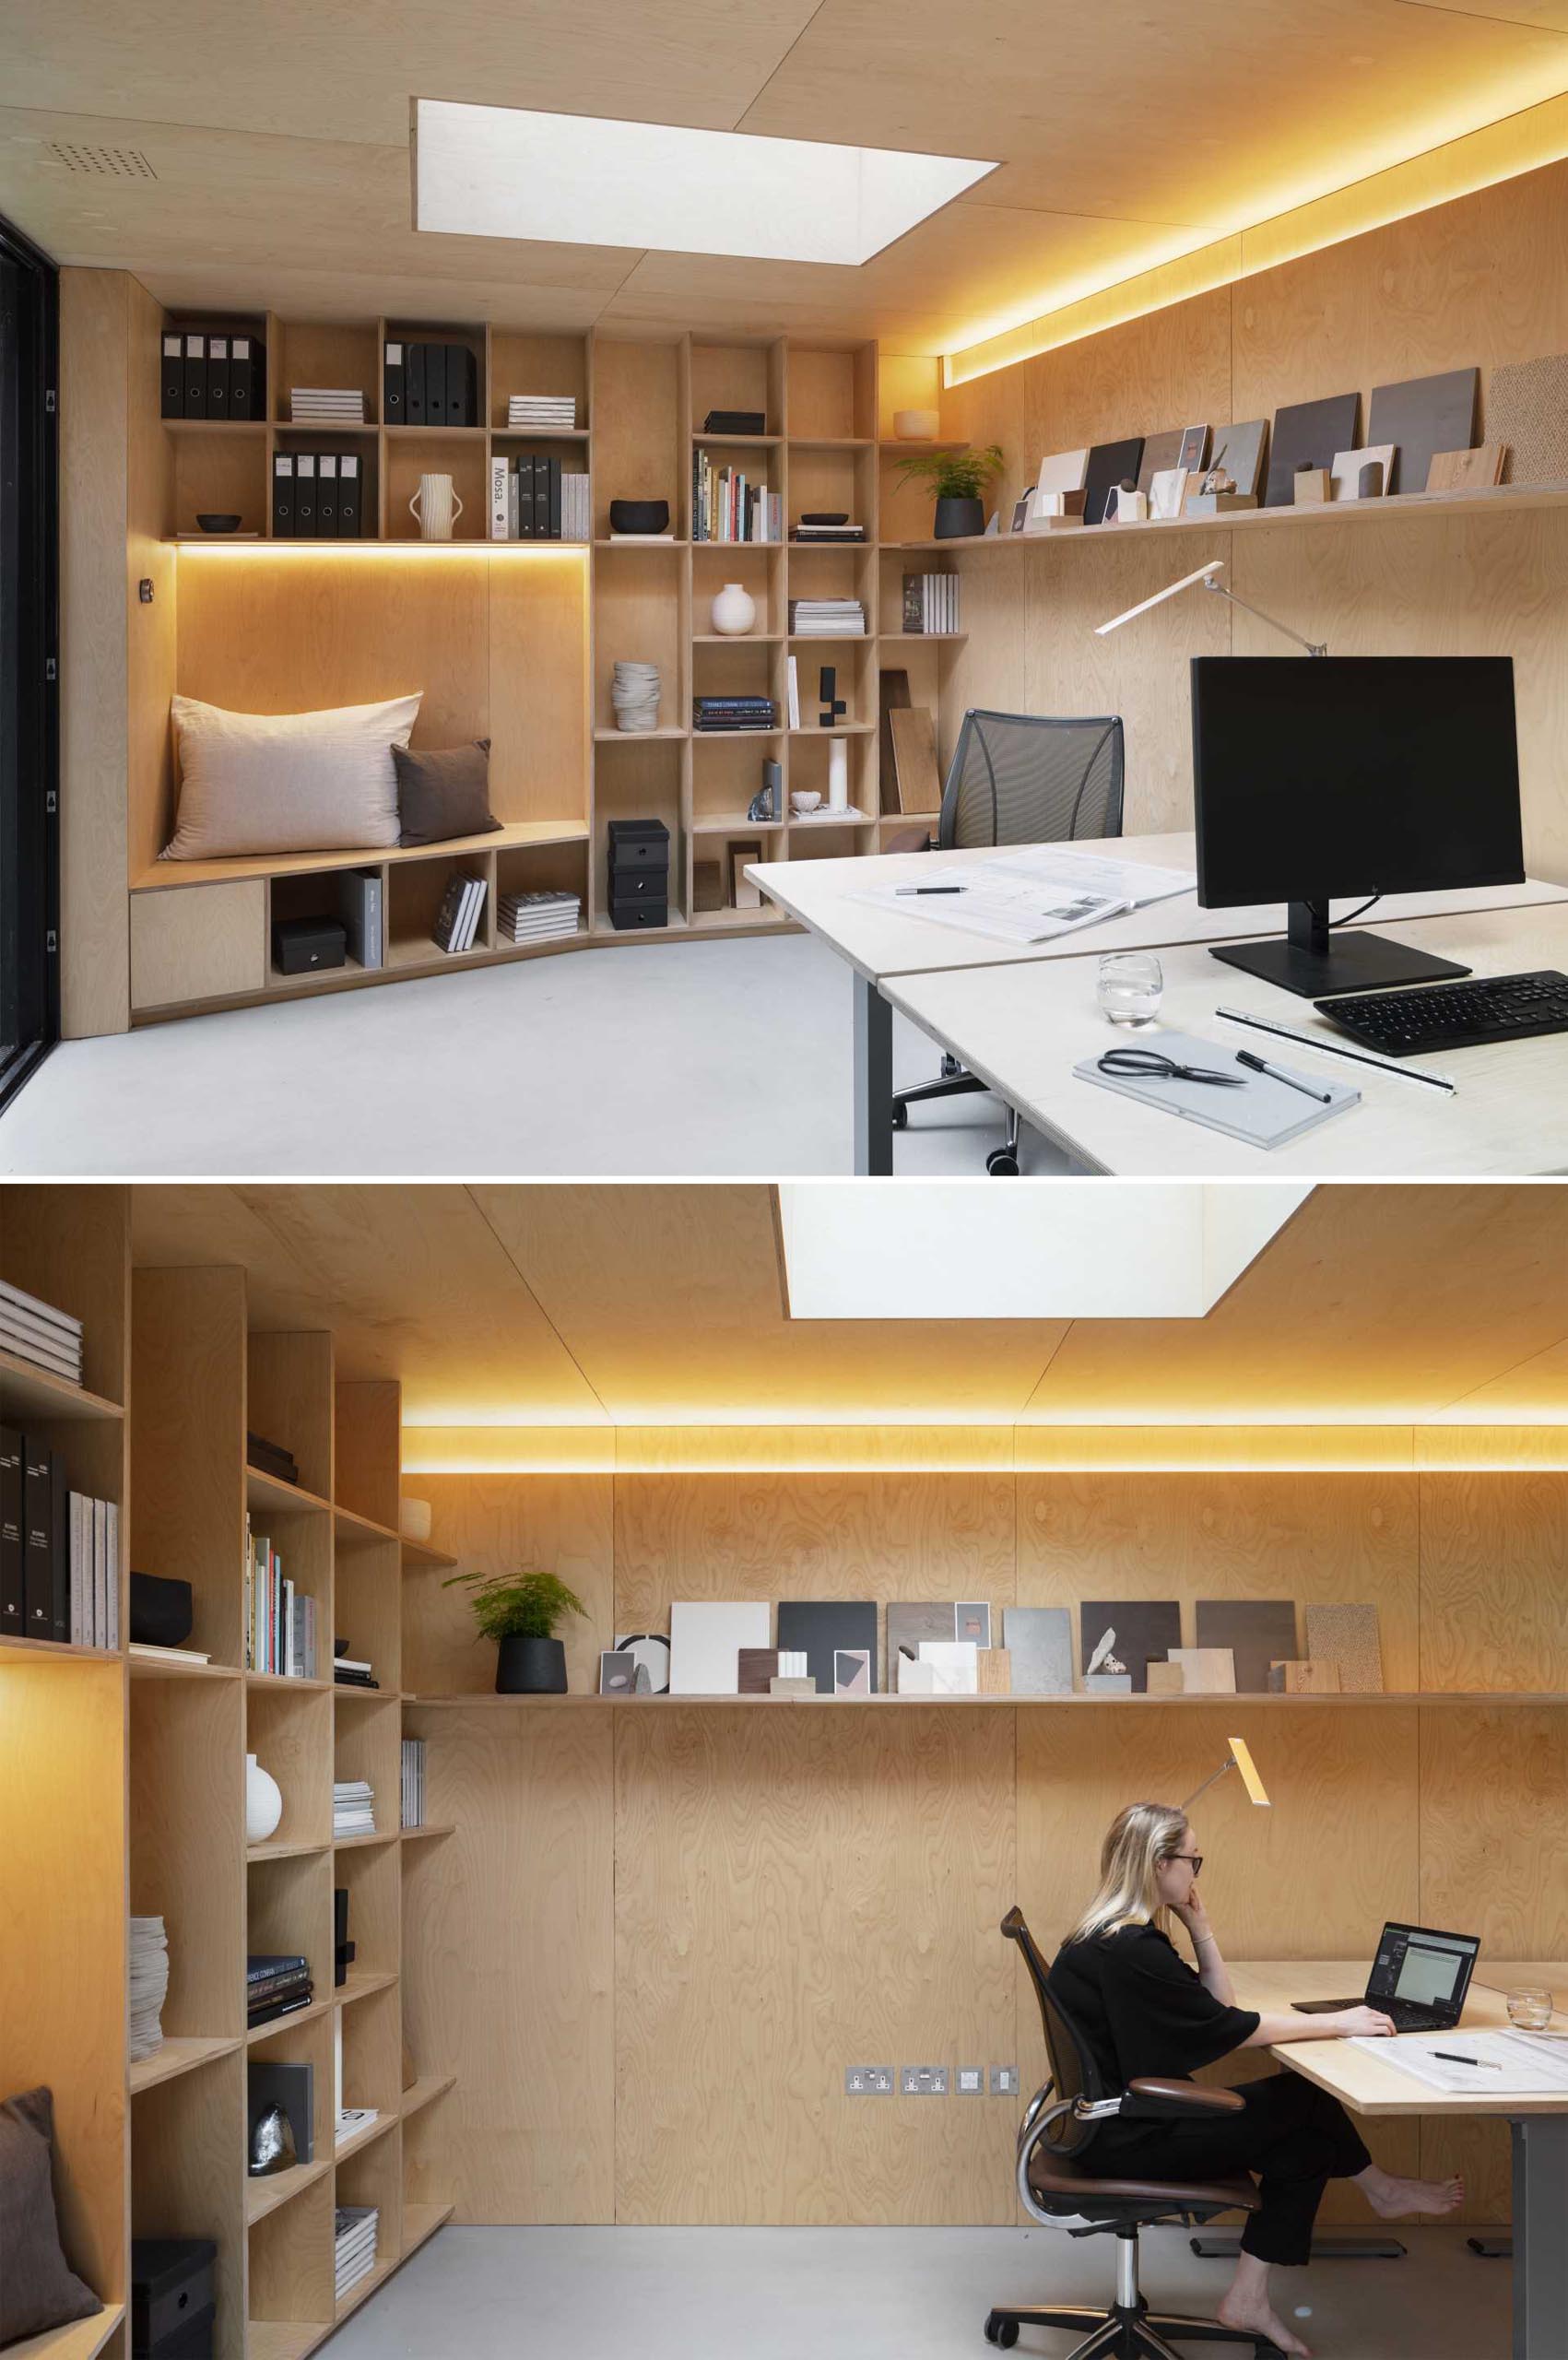 یک استودیوی حیاط خلوت که به ،وان دفتر طراحی شده است شامل دیواری از قفسه های کتاب، گوشه ای برای نشستن و نورپردازی پنهان است.